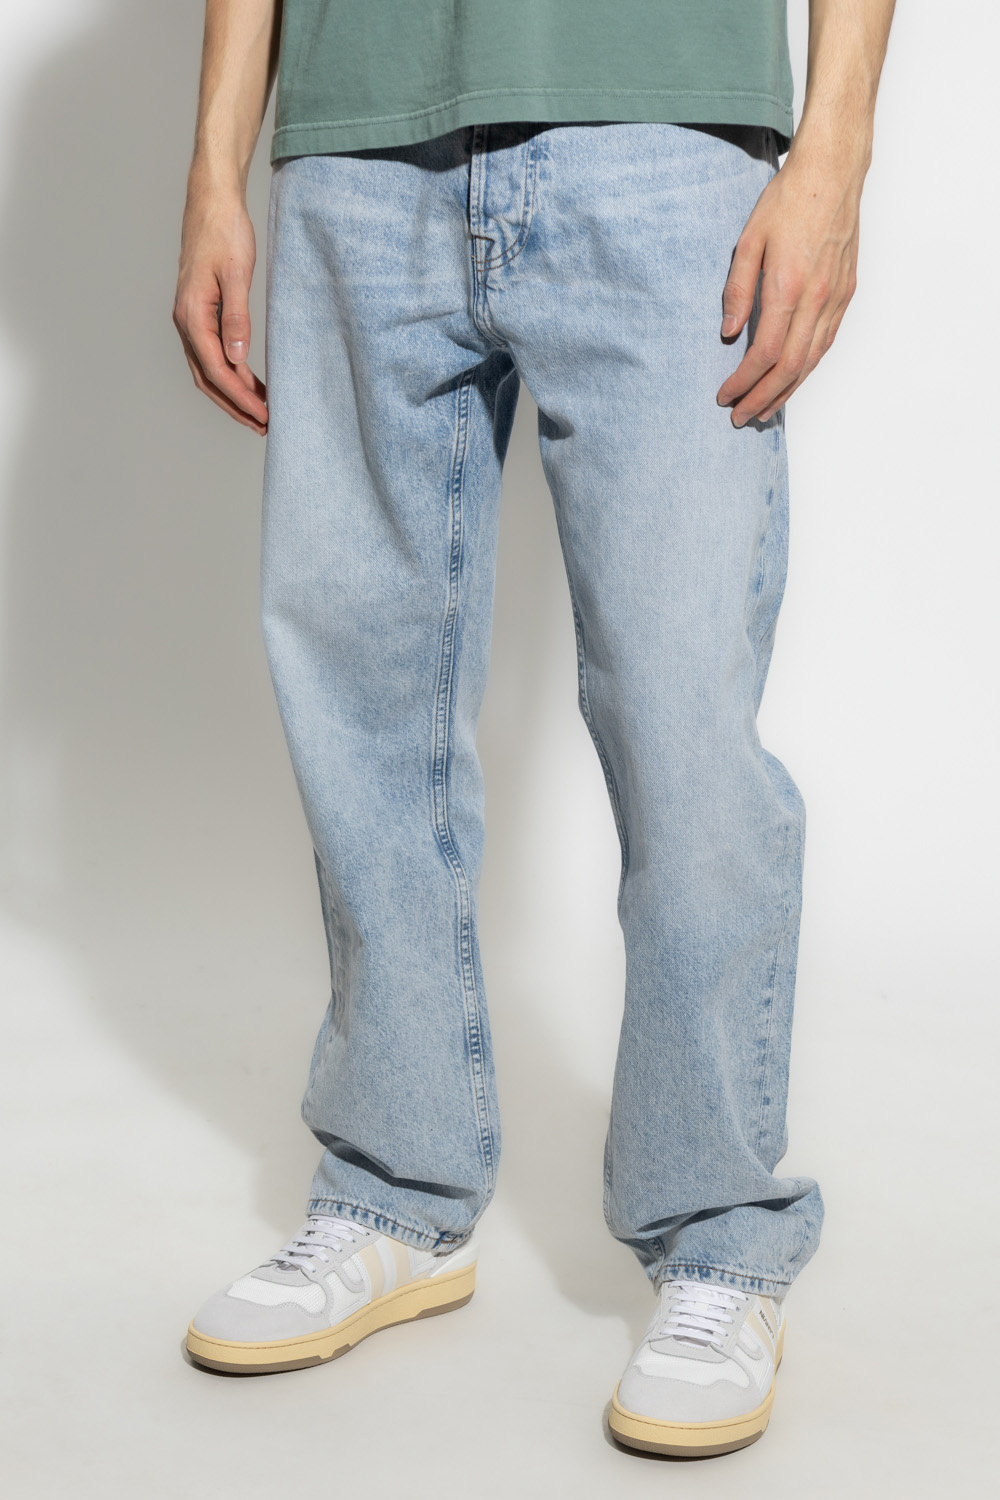 GenesinlifeShops Guyana - Light blue 'Roger' loose jeans Samsøe Samsøe -  five pockets slim fit Nick jeans